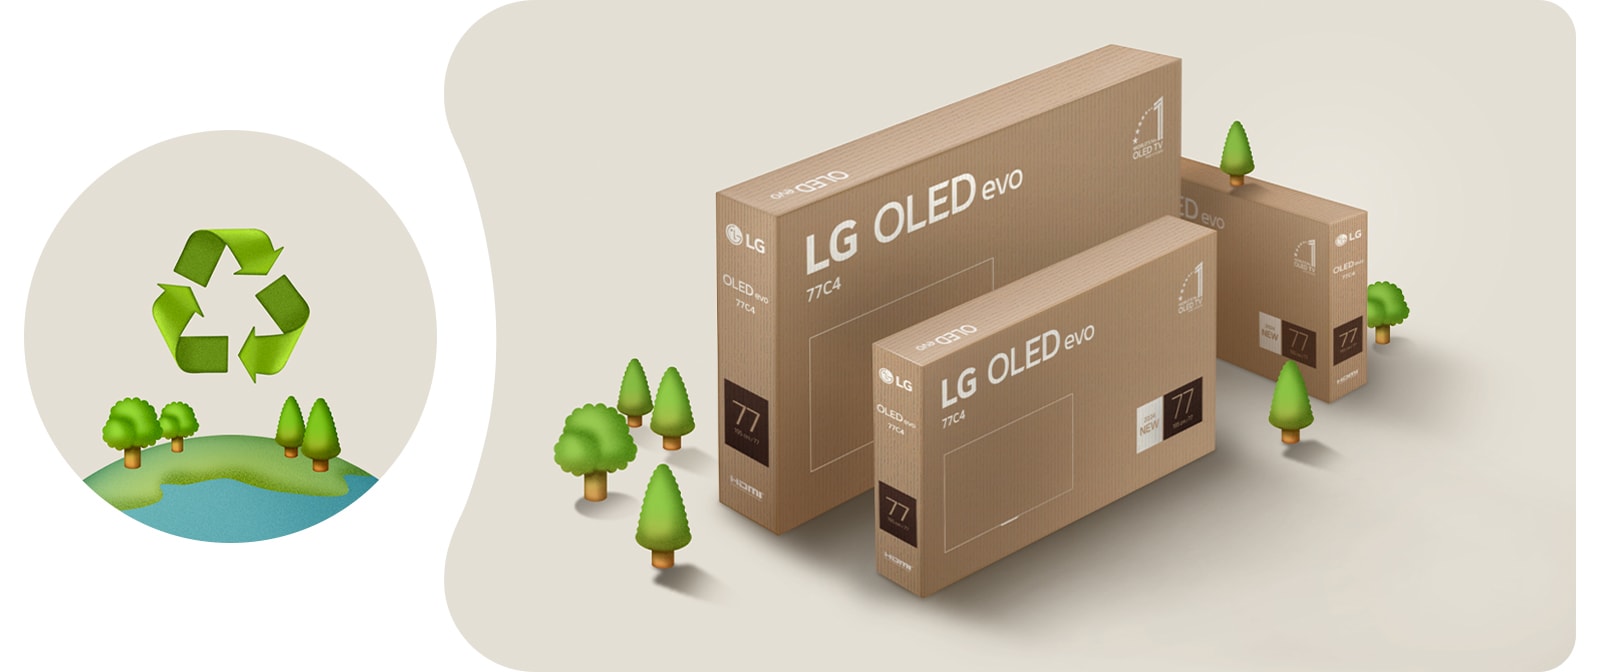 Embalaje de LG OLED sobre un fondo beige con árboles ilustrados.